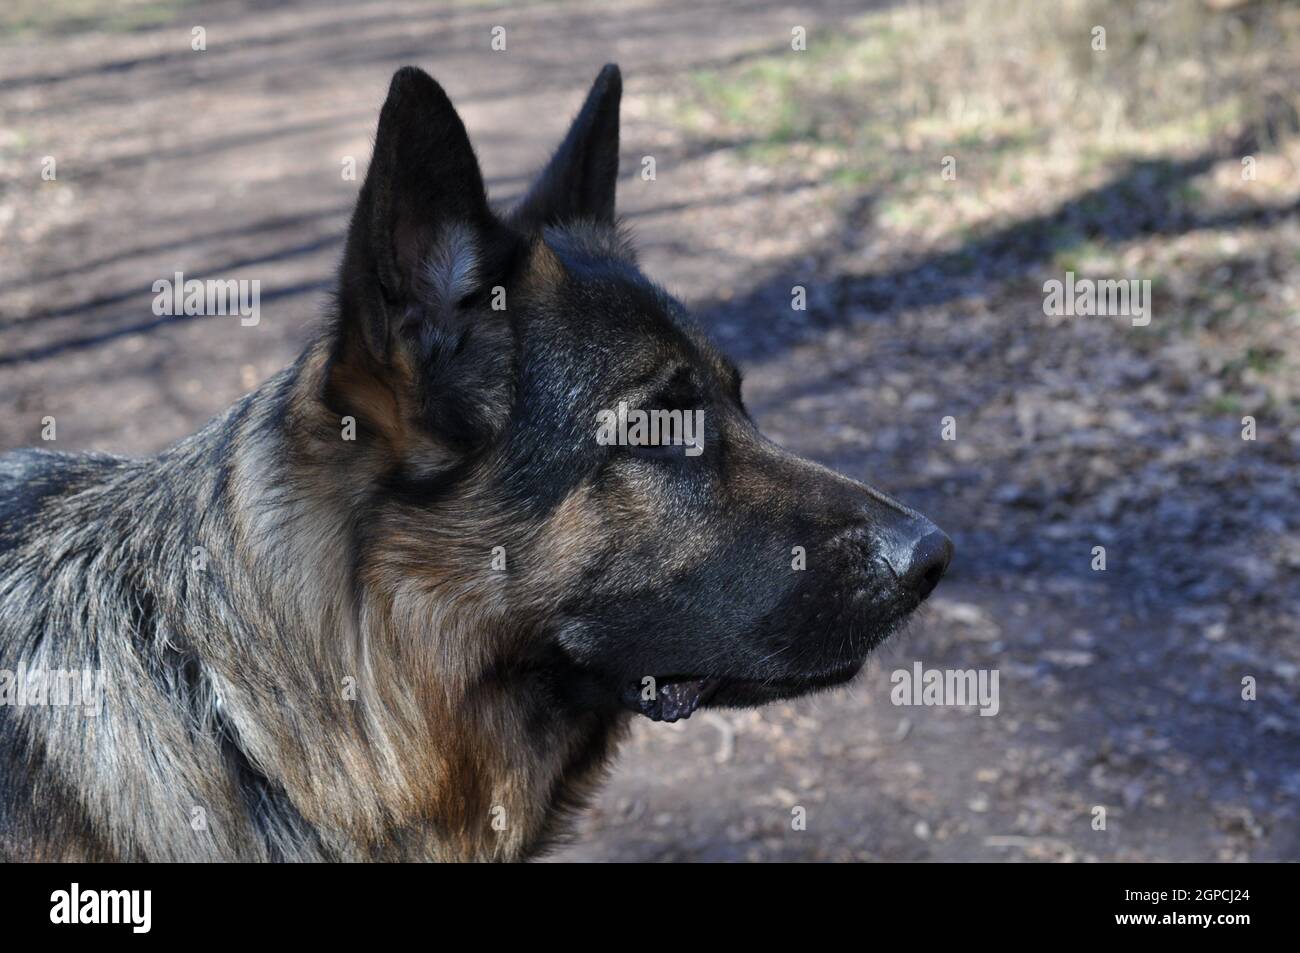 deutscher schäferhund detailaufnahme outdoor portrait Stock Photo